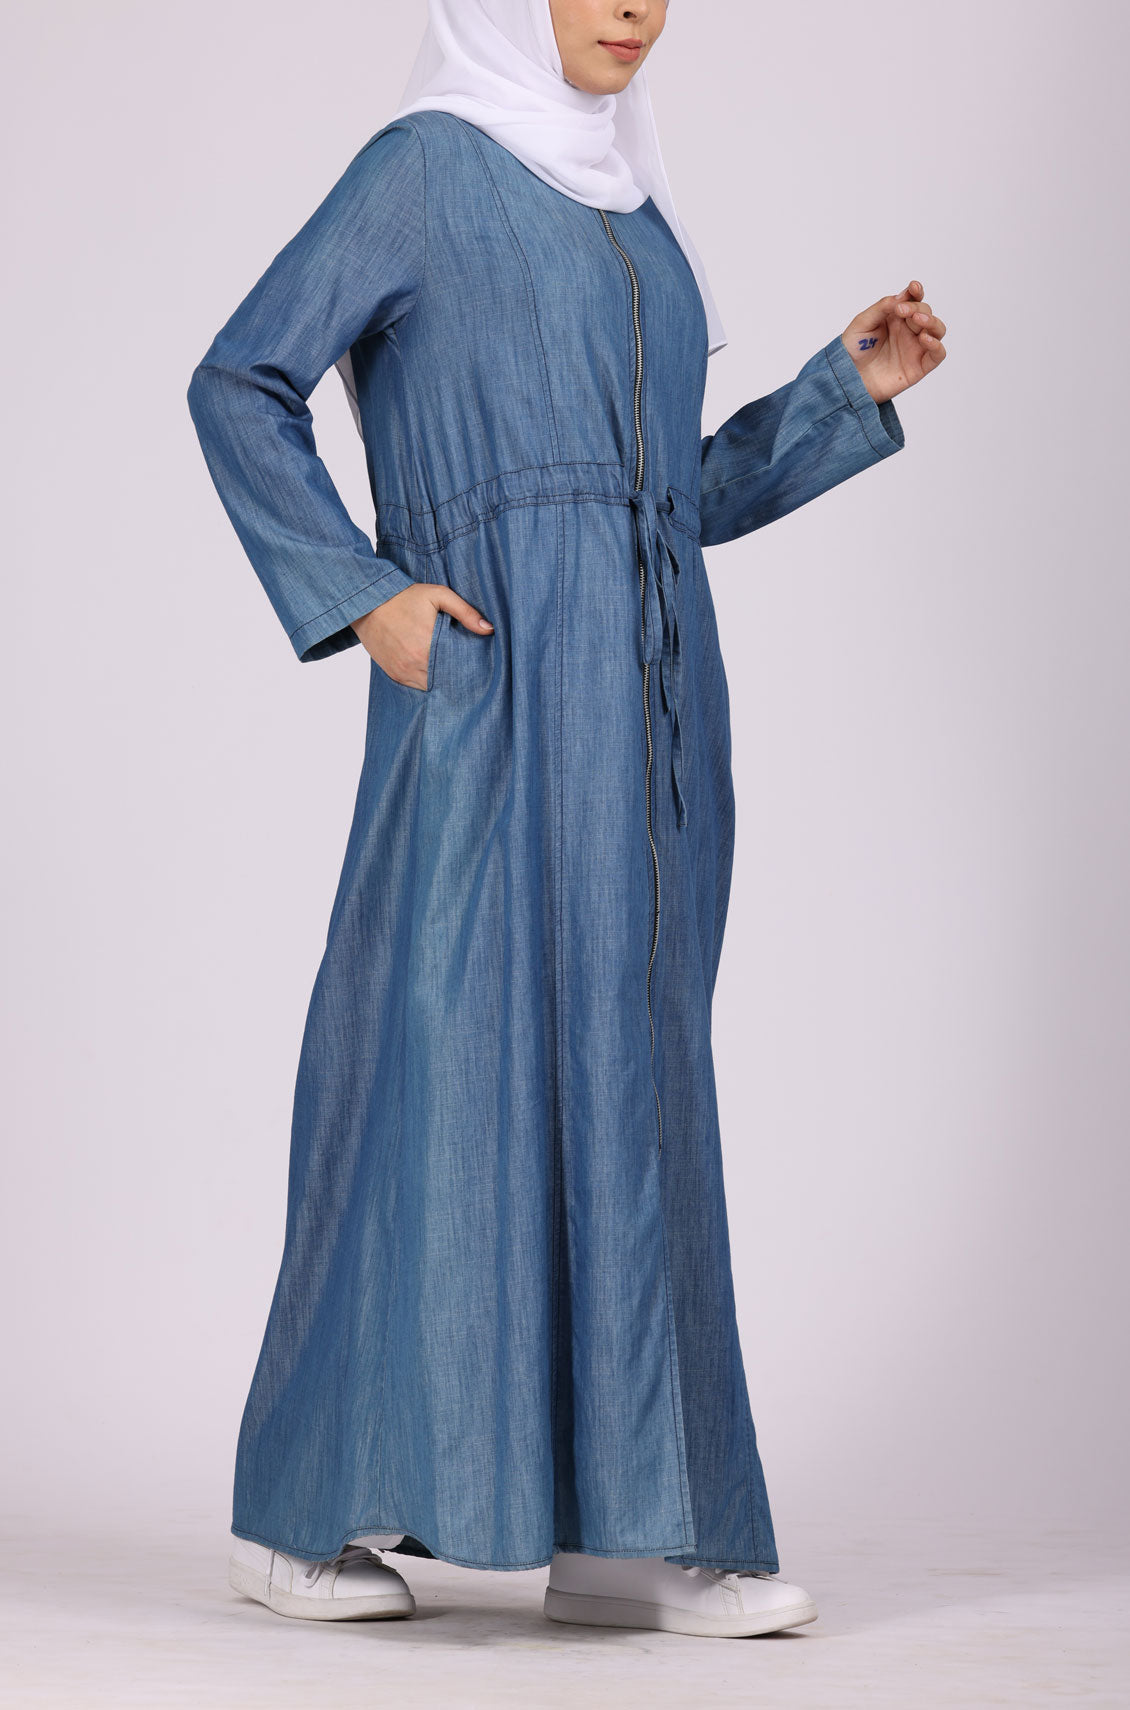 Stylish Simple Blue Denim Abaya – Tahir Qadri Abaya